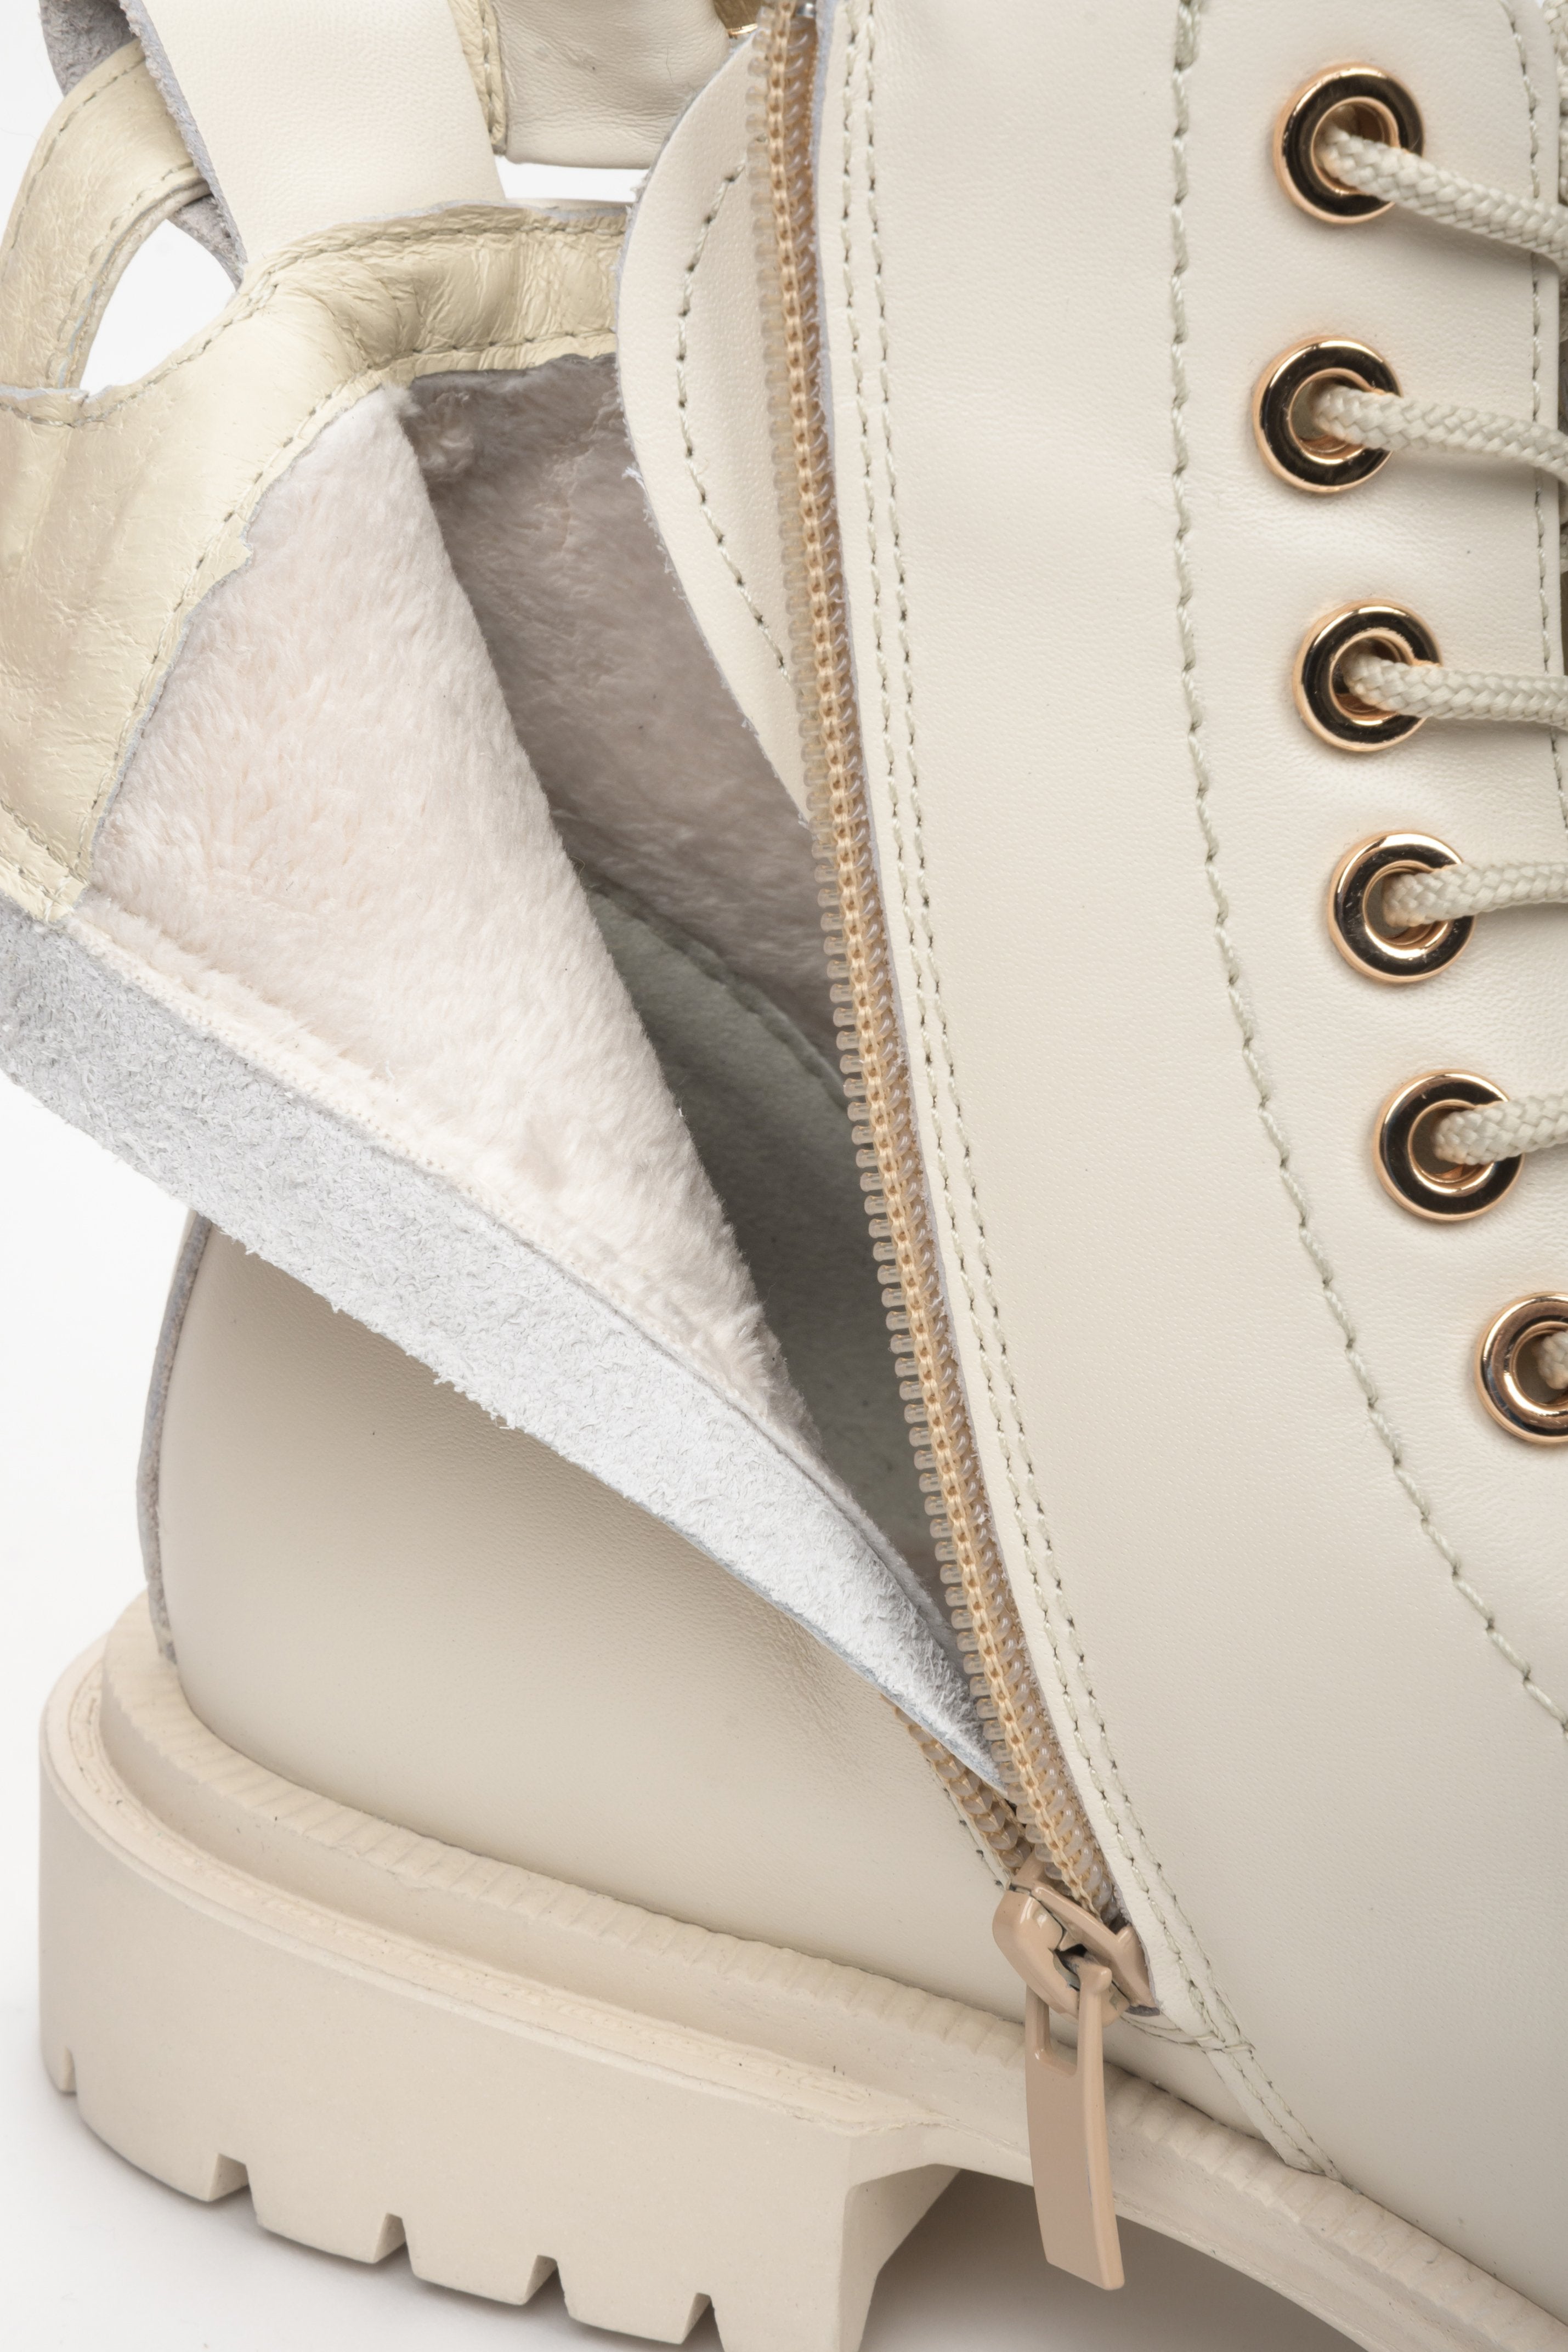 Wysokie, beżowe buty damskie ze skóry naturalnej marki Estro - zbliżenie na wsad buta.